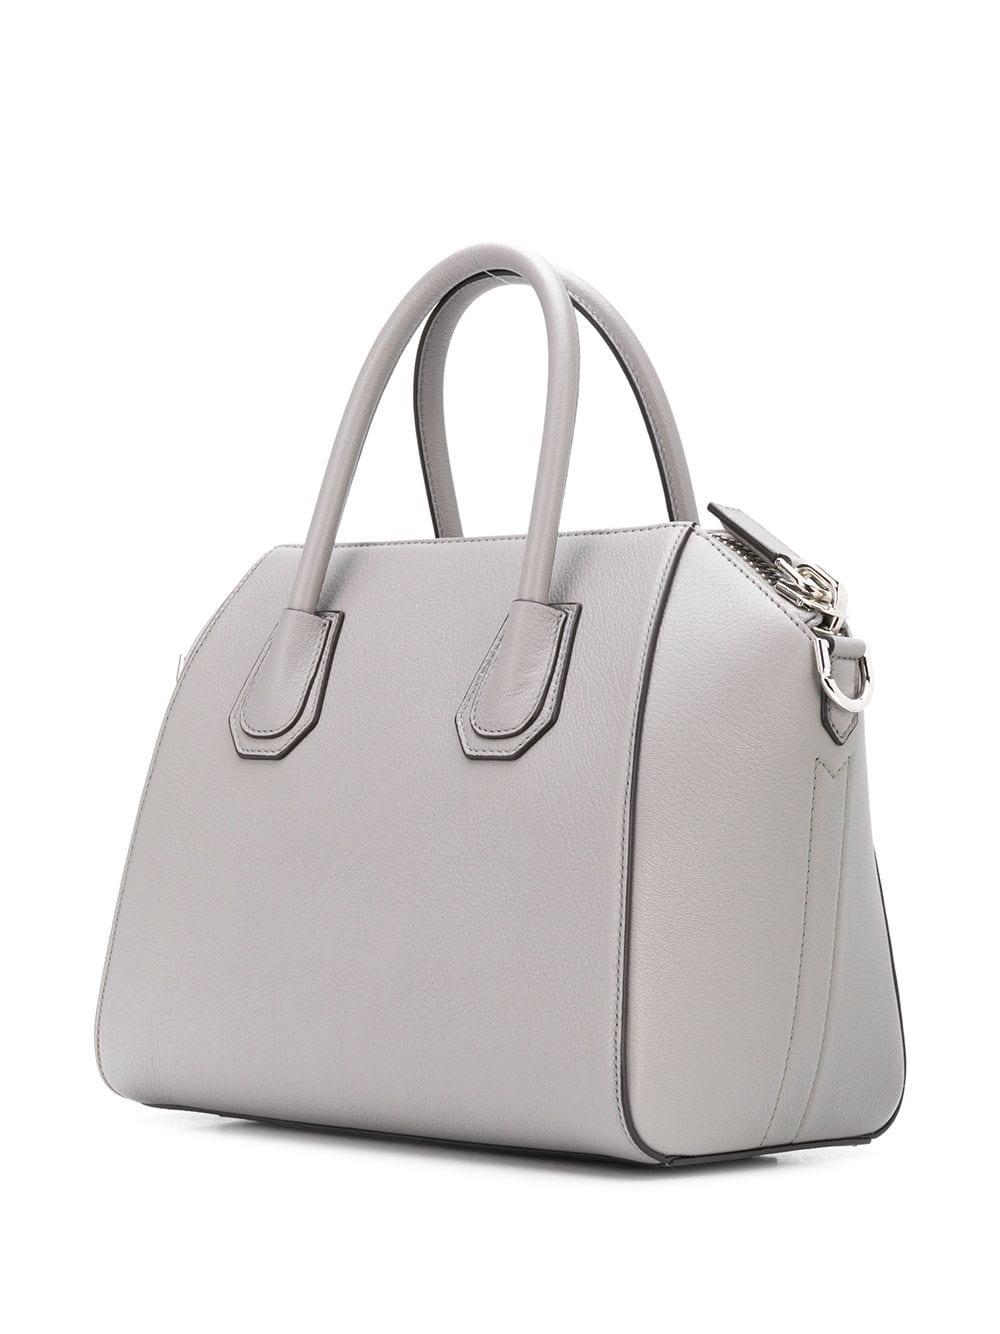 Givenchy Antigona Tote Bag in Grey (Gray) - Save 16% - Lyst